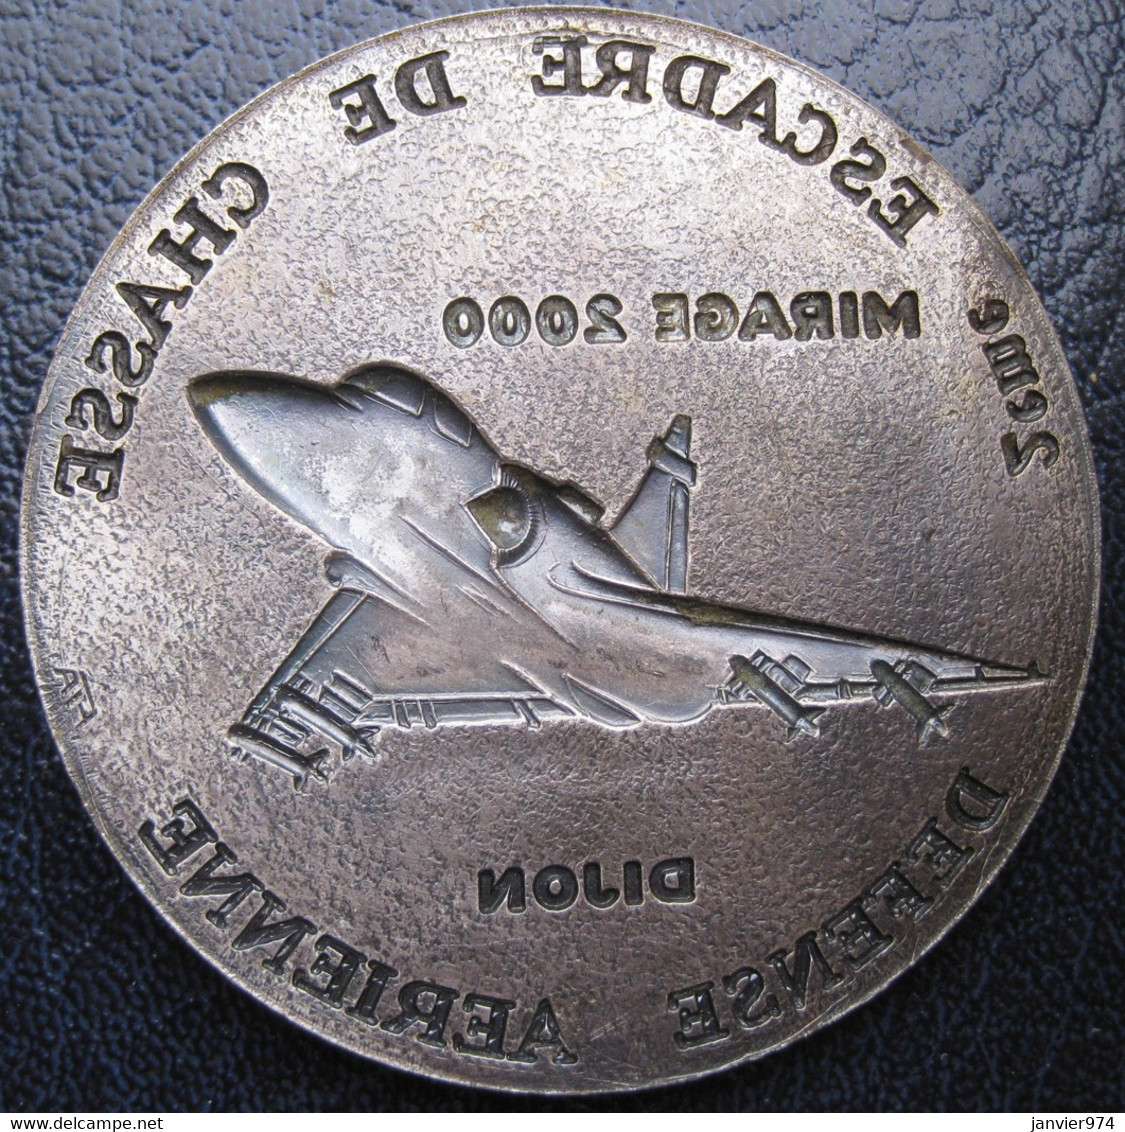 Applique Médaille 2e Escadre De Chasse Défense Aérienne Dijon Mirage 2000 - Frankreich